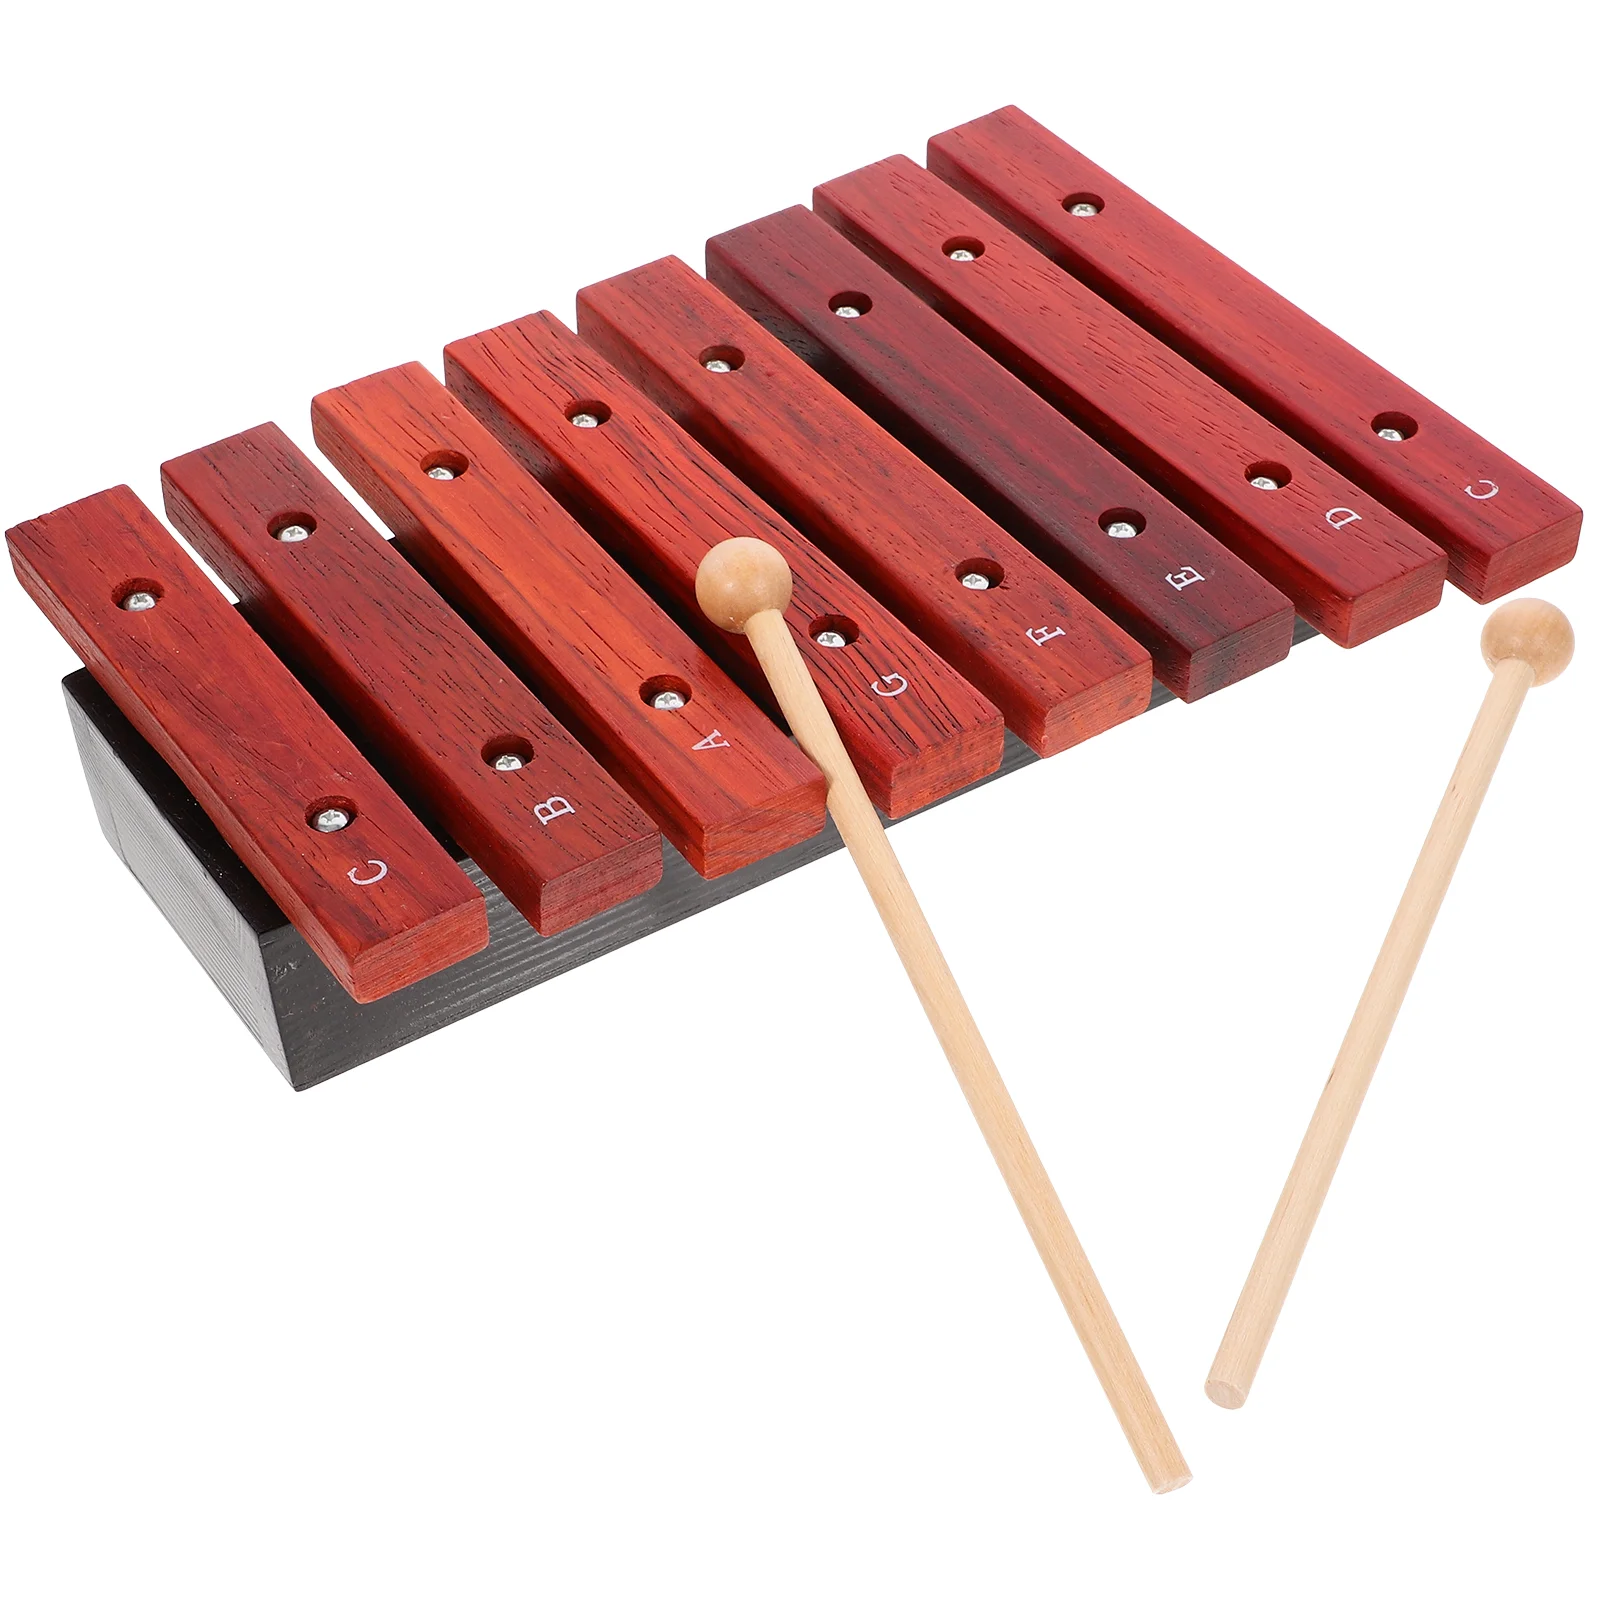 

Музыкальный инструмент восемь нот фортепиано малыш ксилофон Дошкольная игрушка перкуссионные инструменты для детей